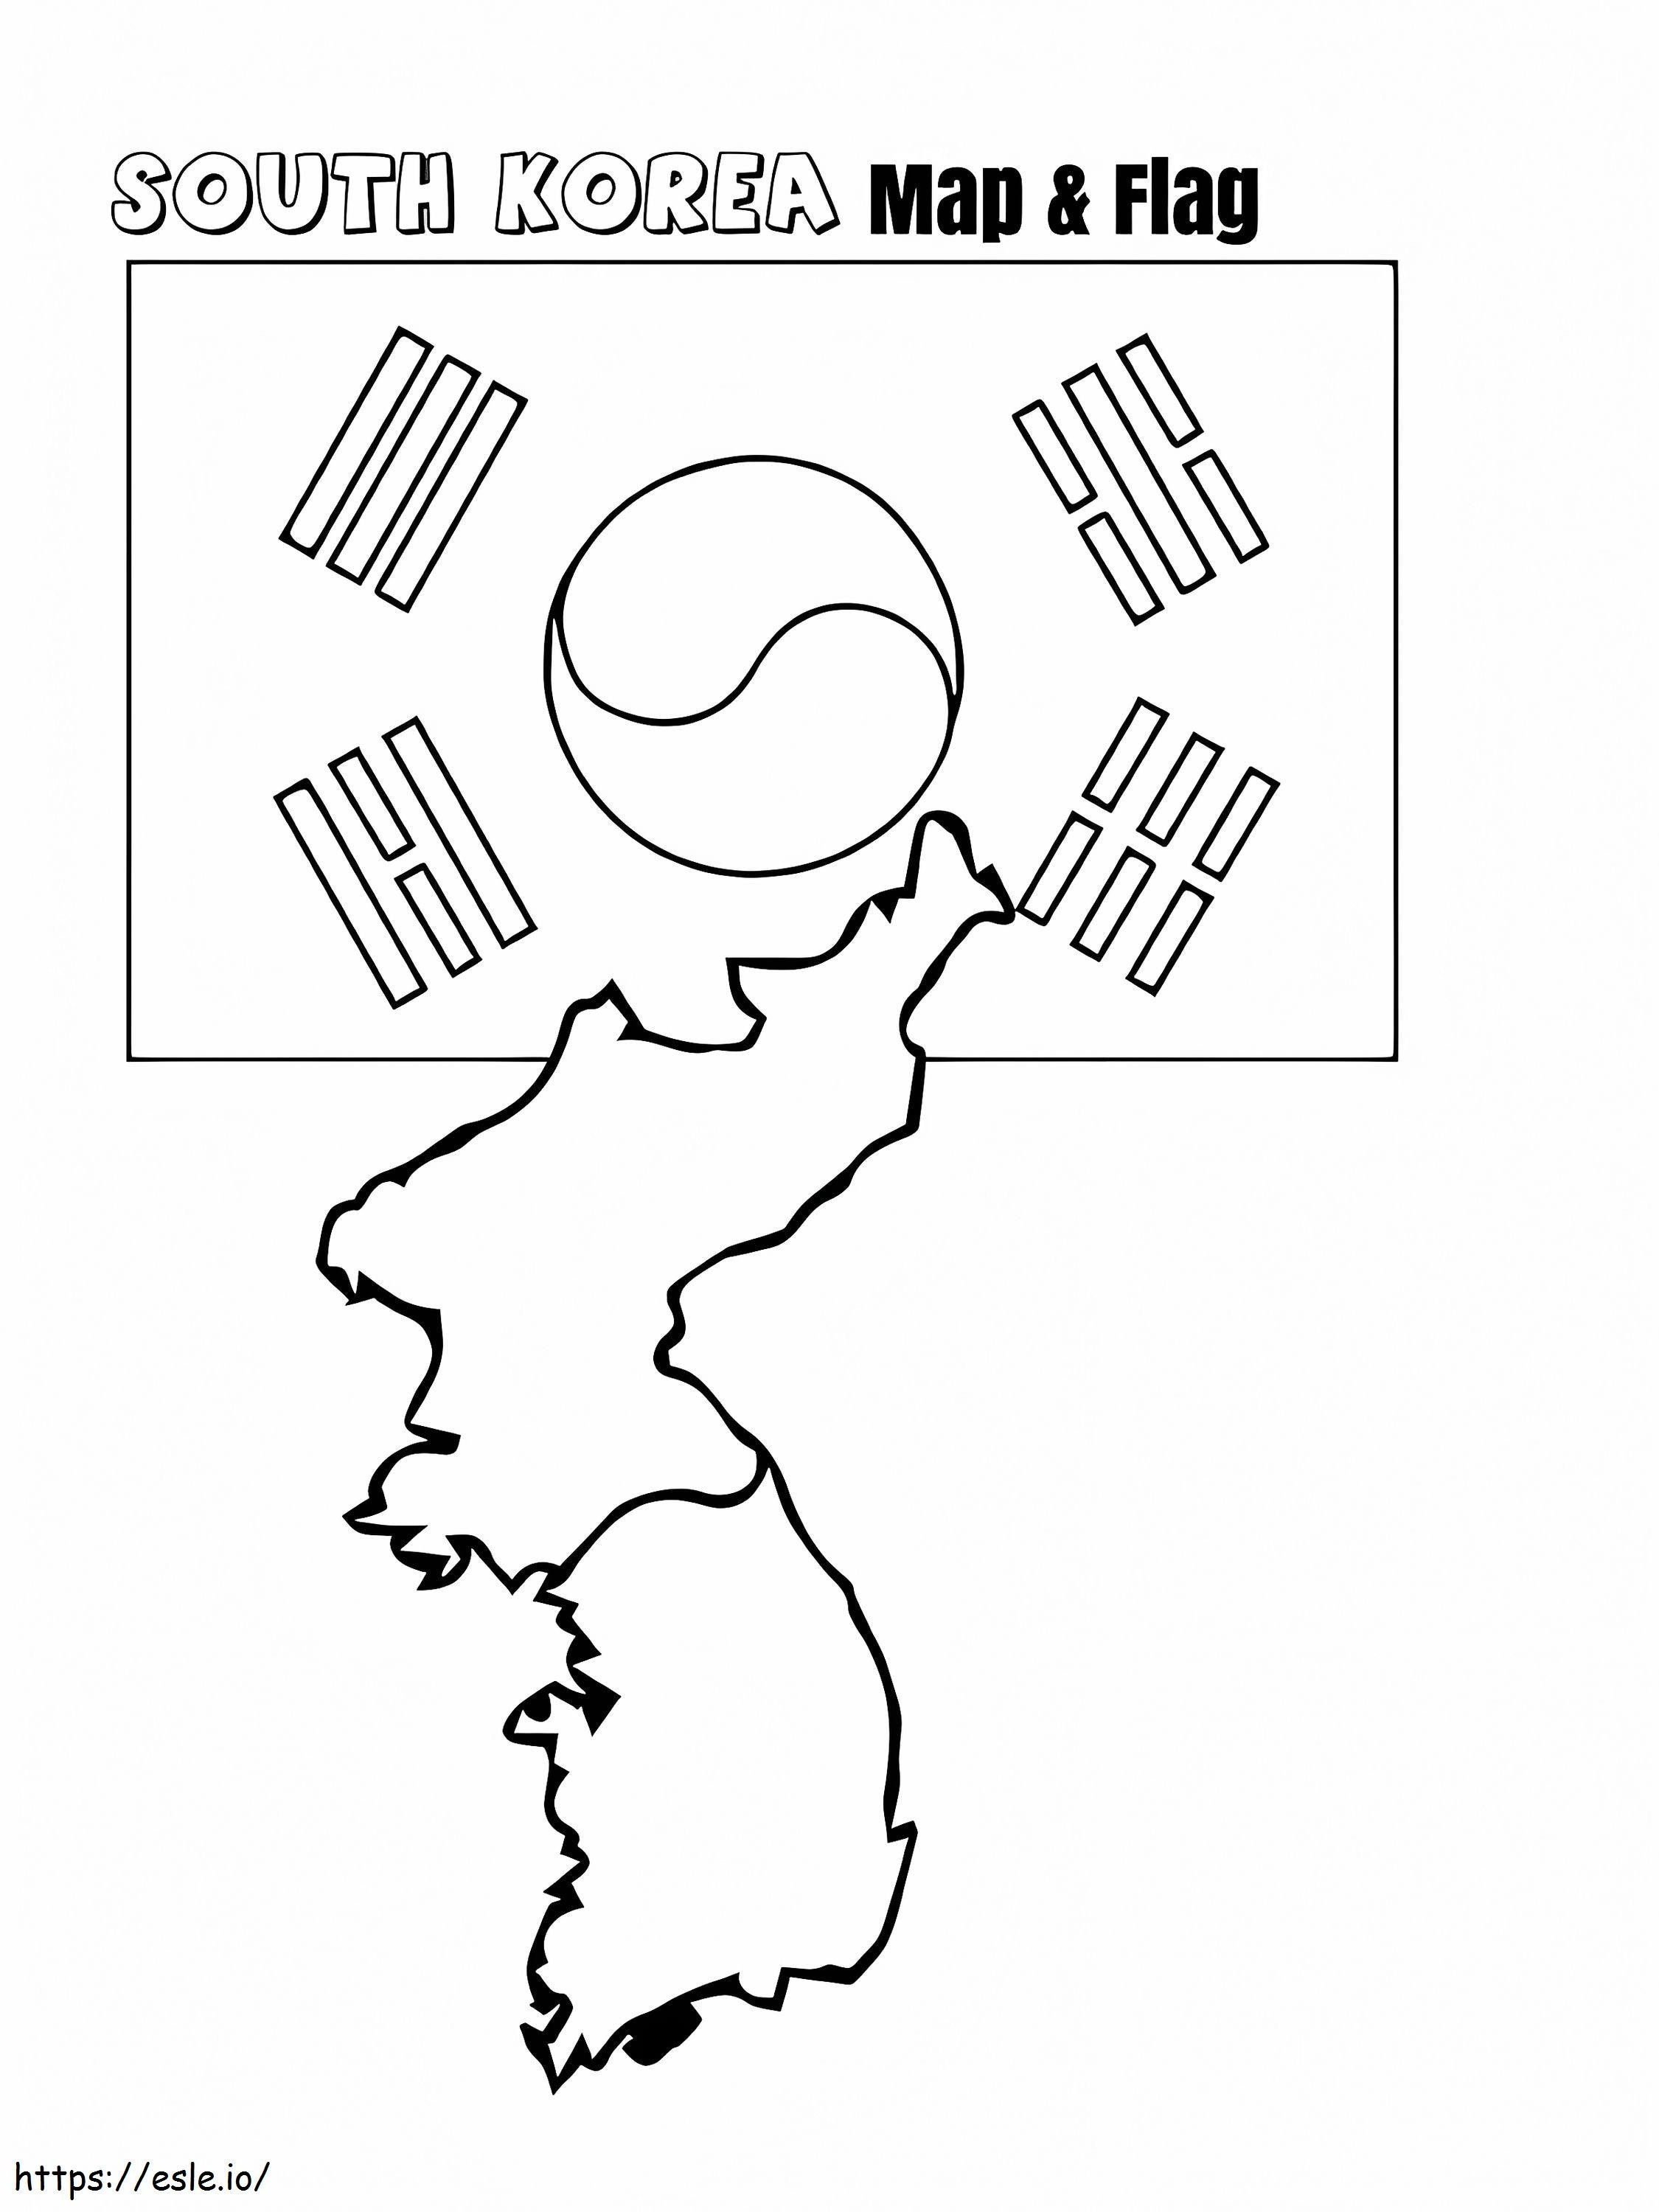 Güney Kore Haritası ve Bayrağı boyama